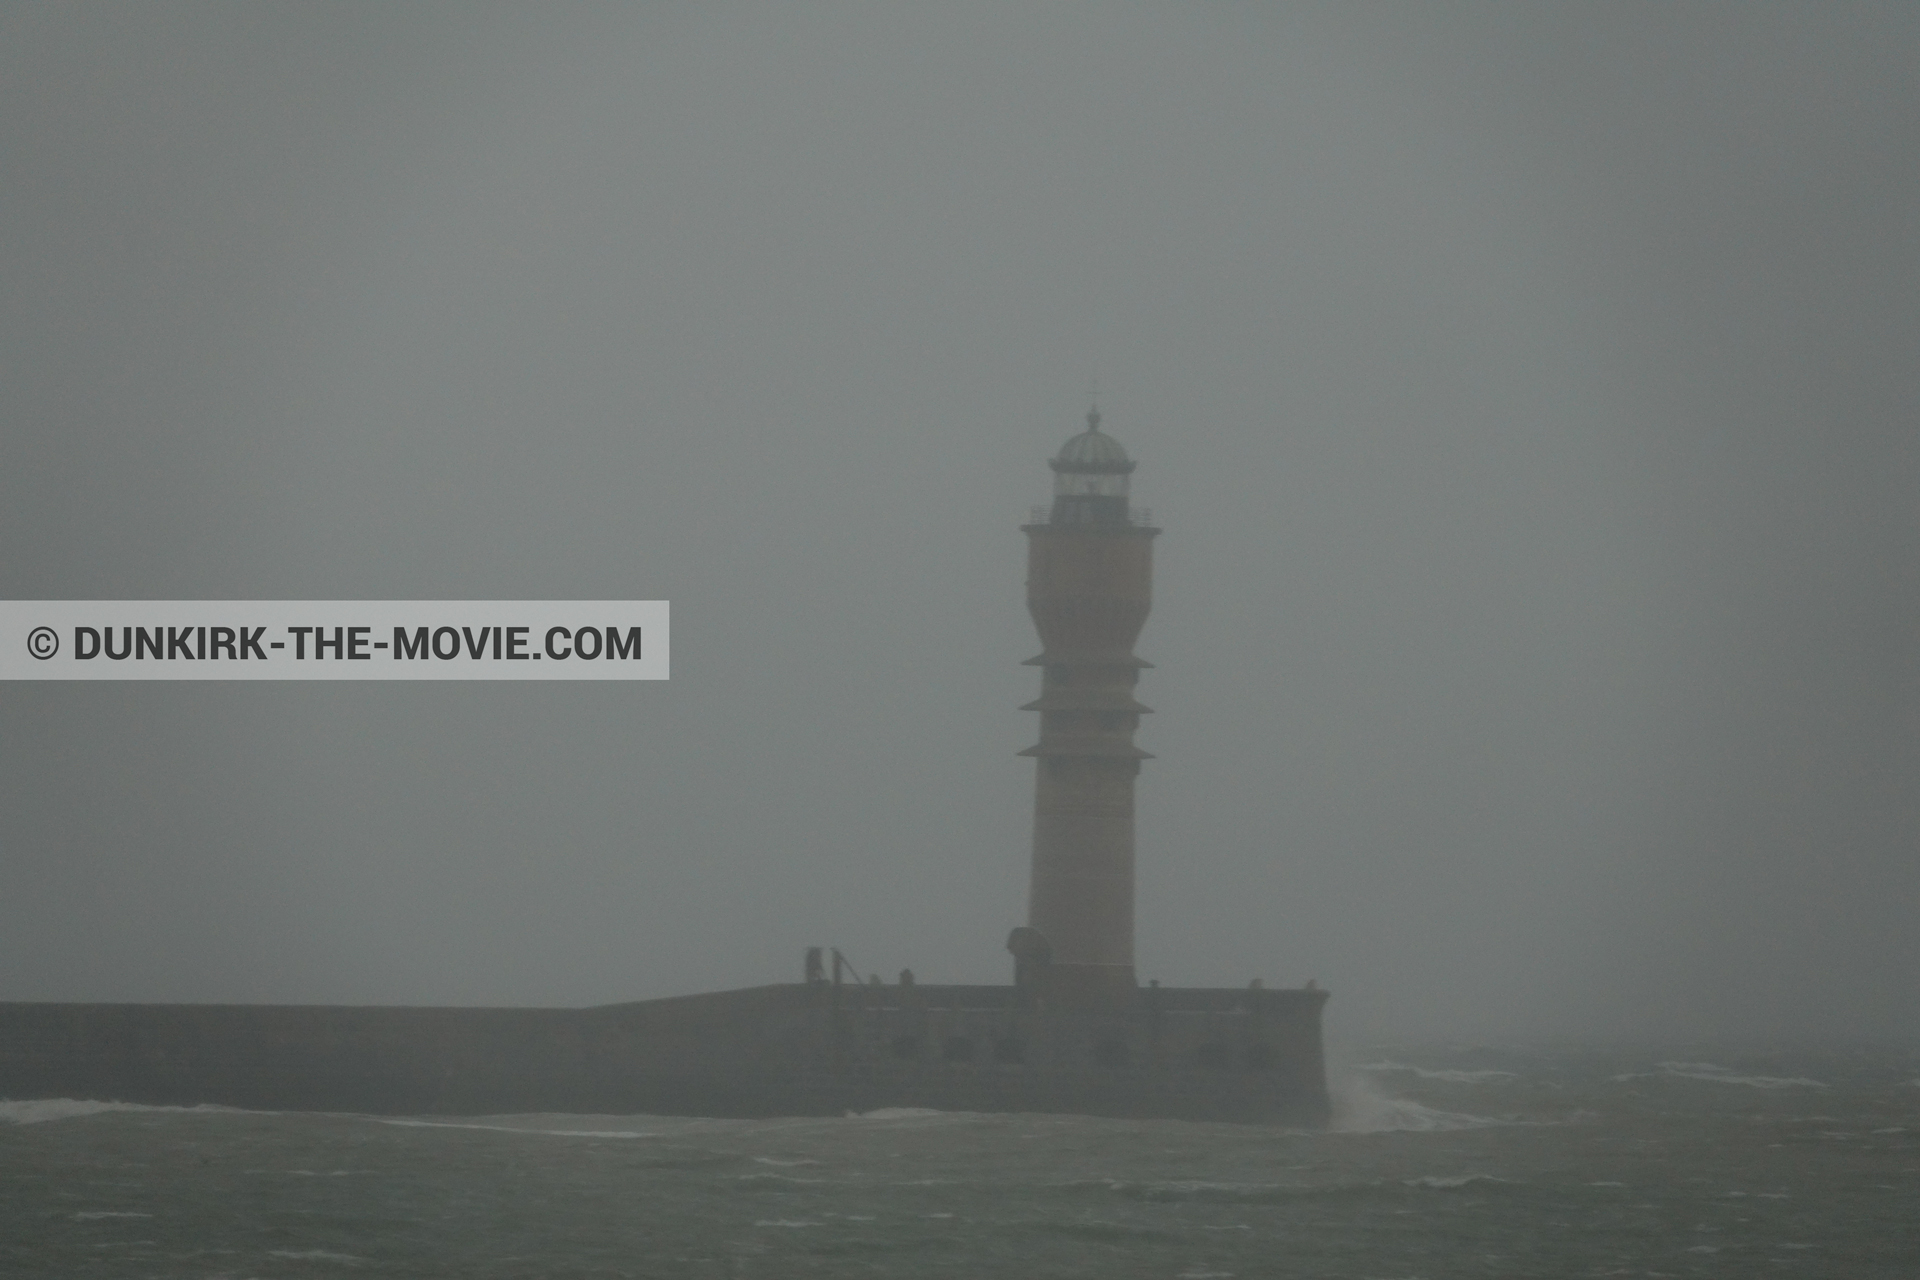 Fotos con cielo gris, mares agitados, faro de Saint-Pol-sur-Mer,  durante el rodaje de la película Dunkerque de Nolan